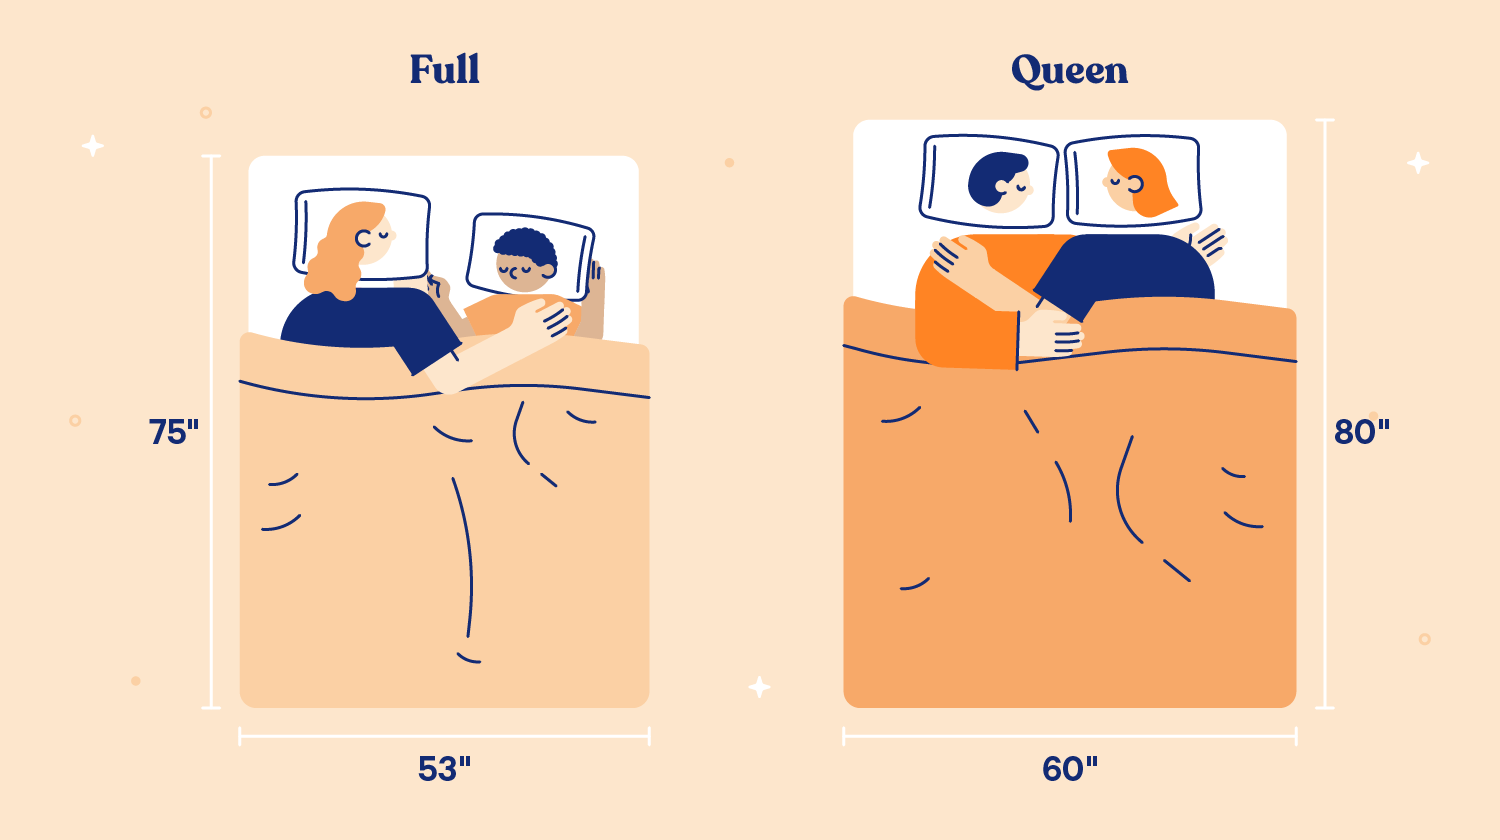 queen vs full mattress